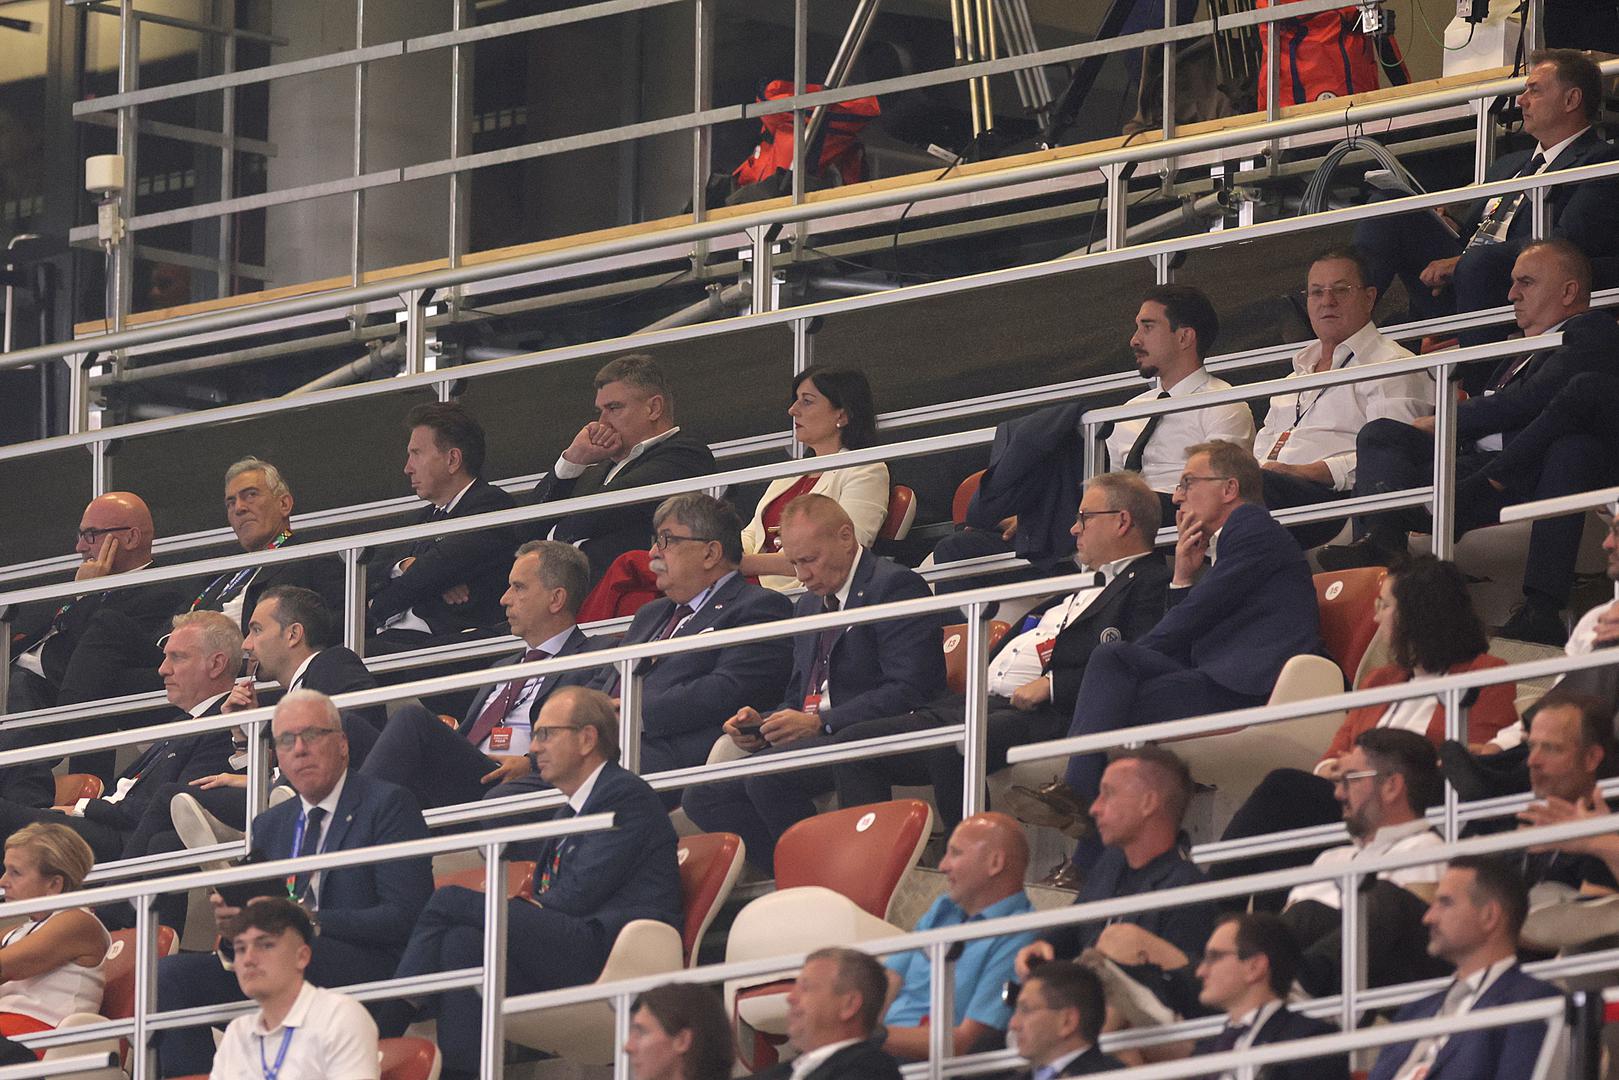 Sinoćnji remi Hrvatske i Italije iz svečane lože stadiona u Leipzigu pratili su brojni uglednici iz svijeta politike i sporta, a među njima se našao i predsjednik Republike Hrvatske Zoran Milanović.